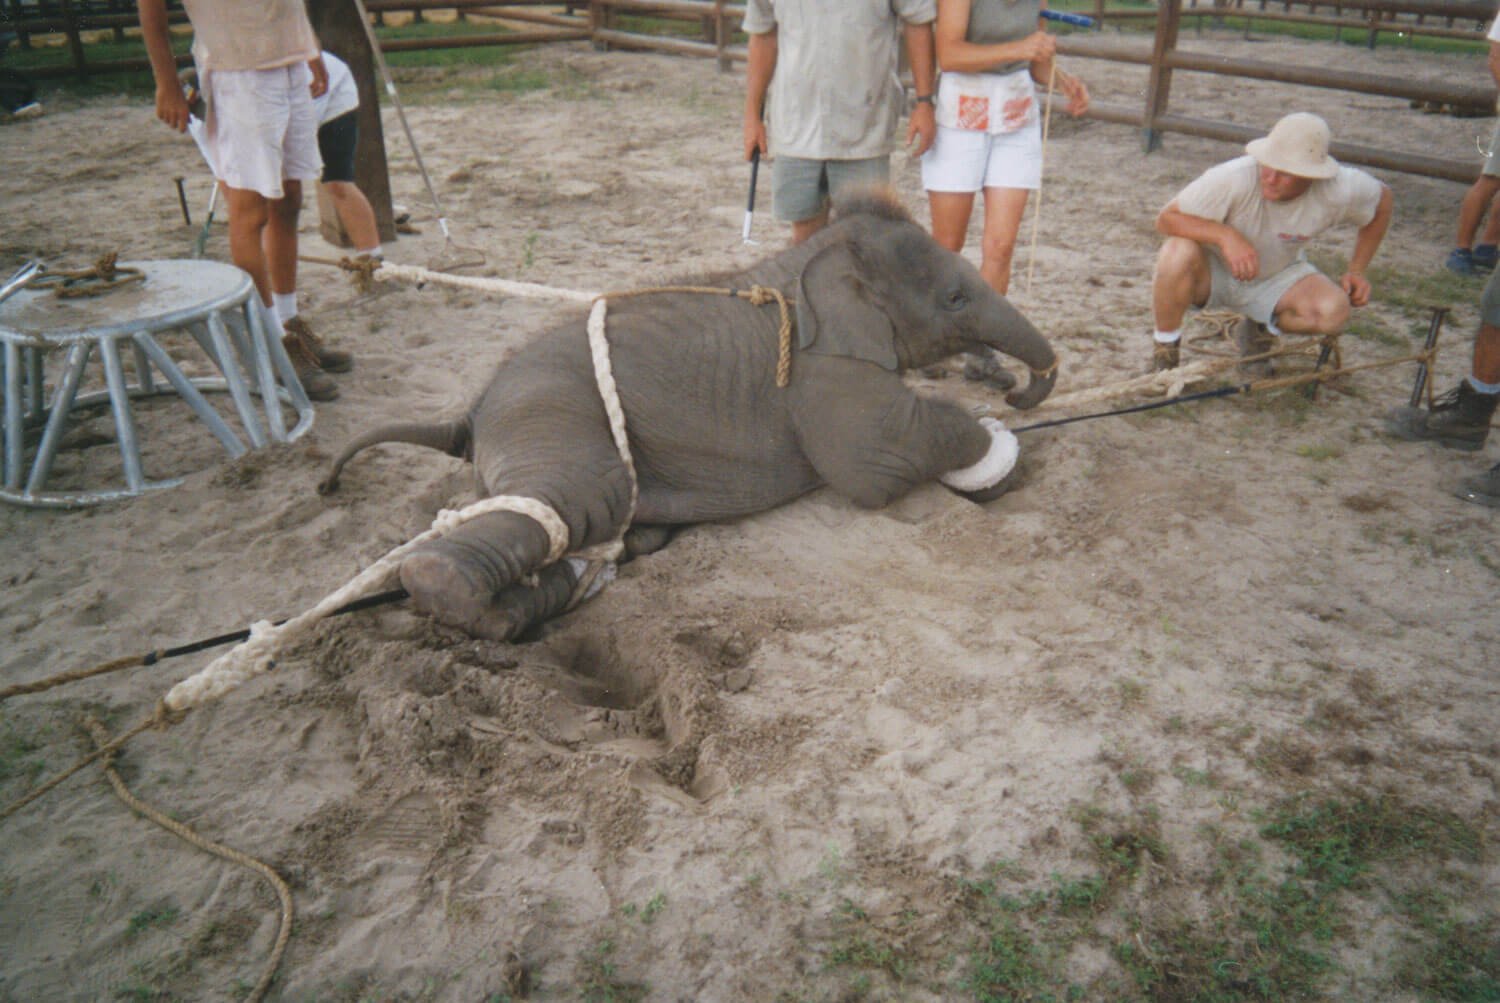 Nieuwe foto’s tonen aan hoe olifanten worden mishandeld in Ringling circus